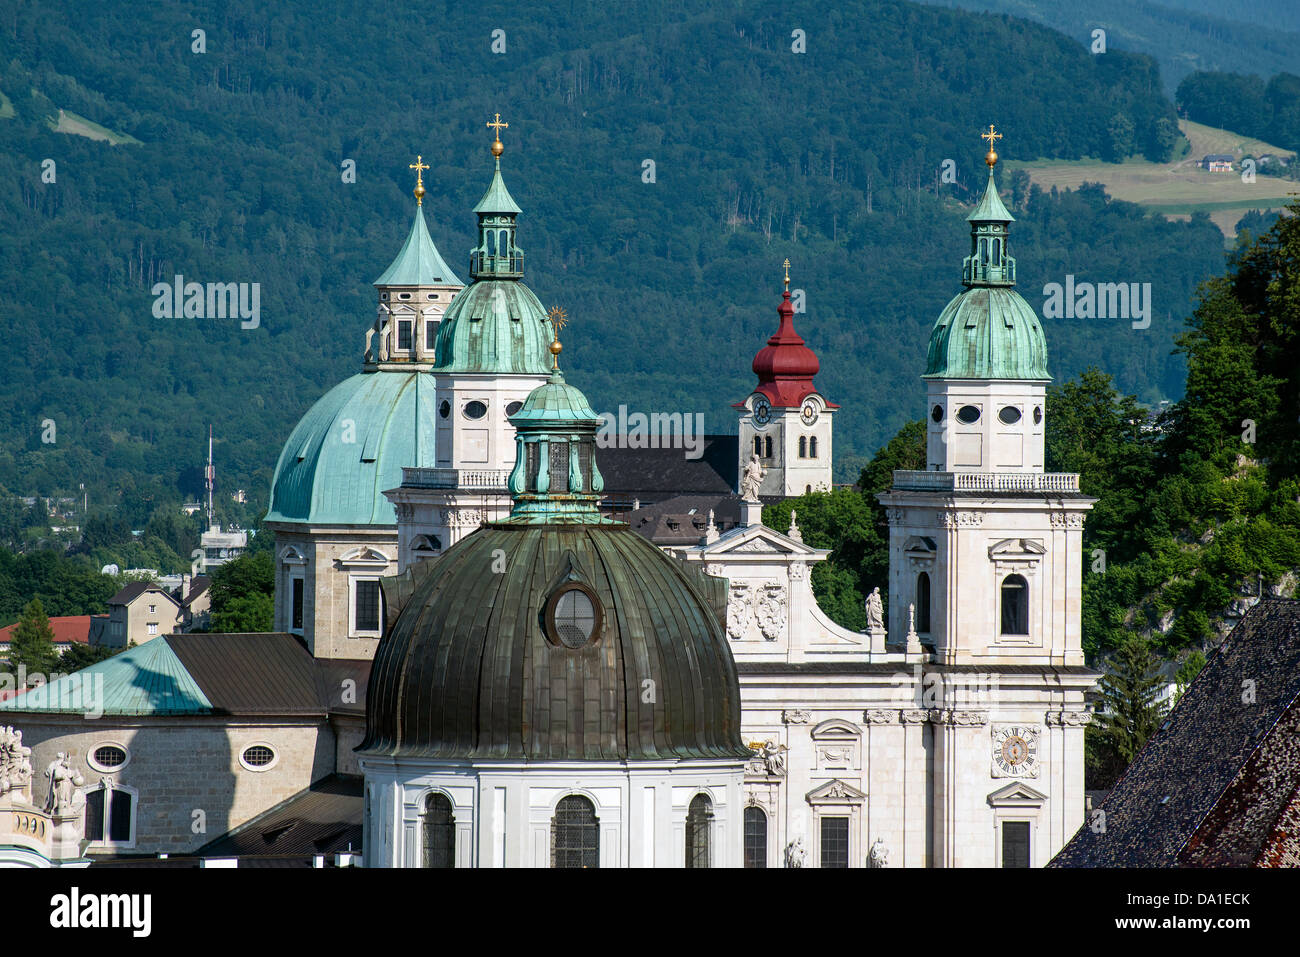 Vue panoramique sur les dômes et les clochers de la vieille ville, Salzbourg, Autriche Banque D'Images